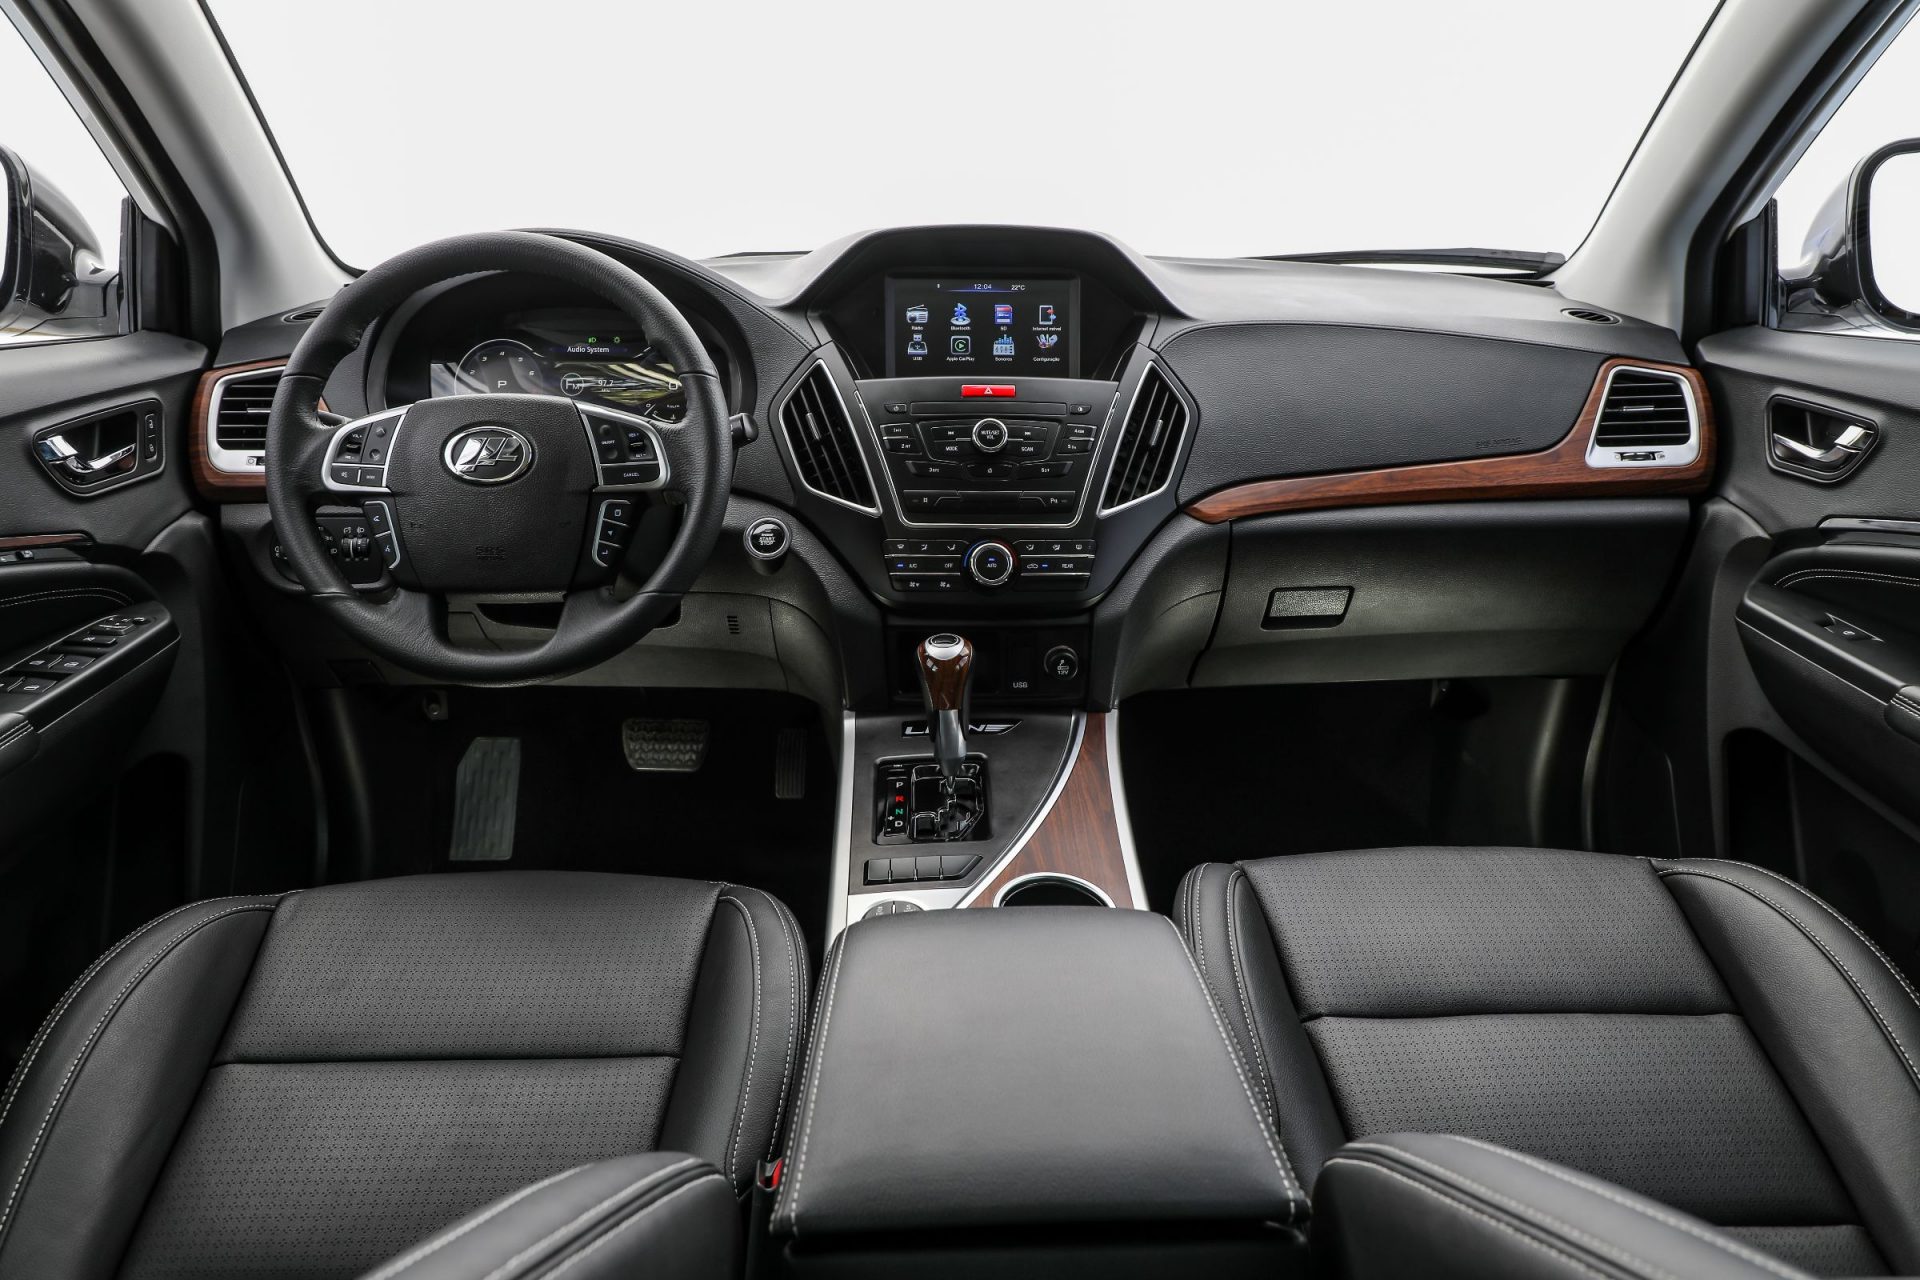 Lifan lançou o X80, com preço de R$ 129.777. SUV com porte entre os modelos médios e grandes tem espaço para sete ocupantes e motor turbo.